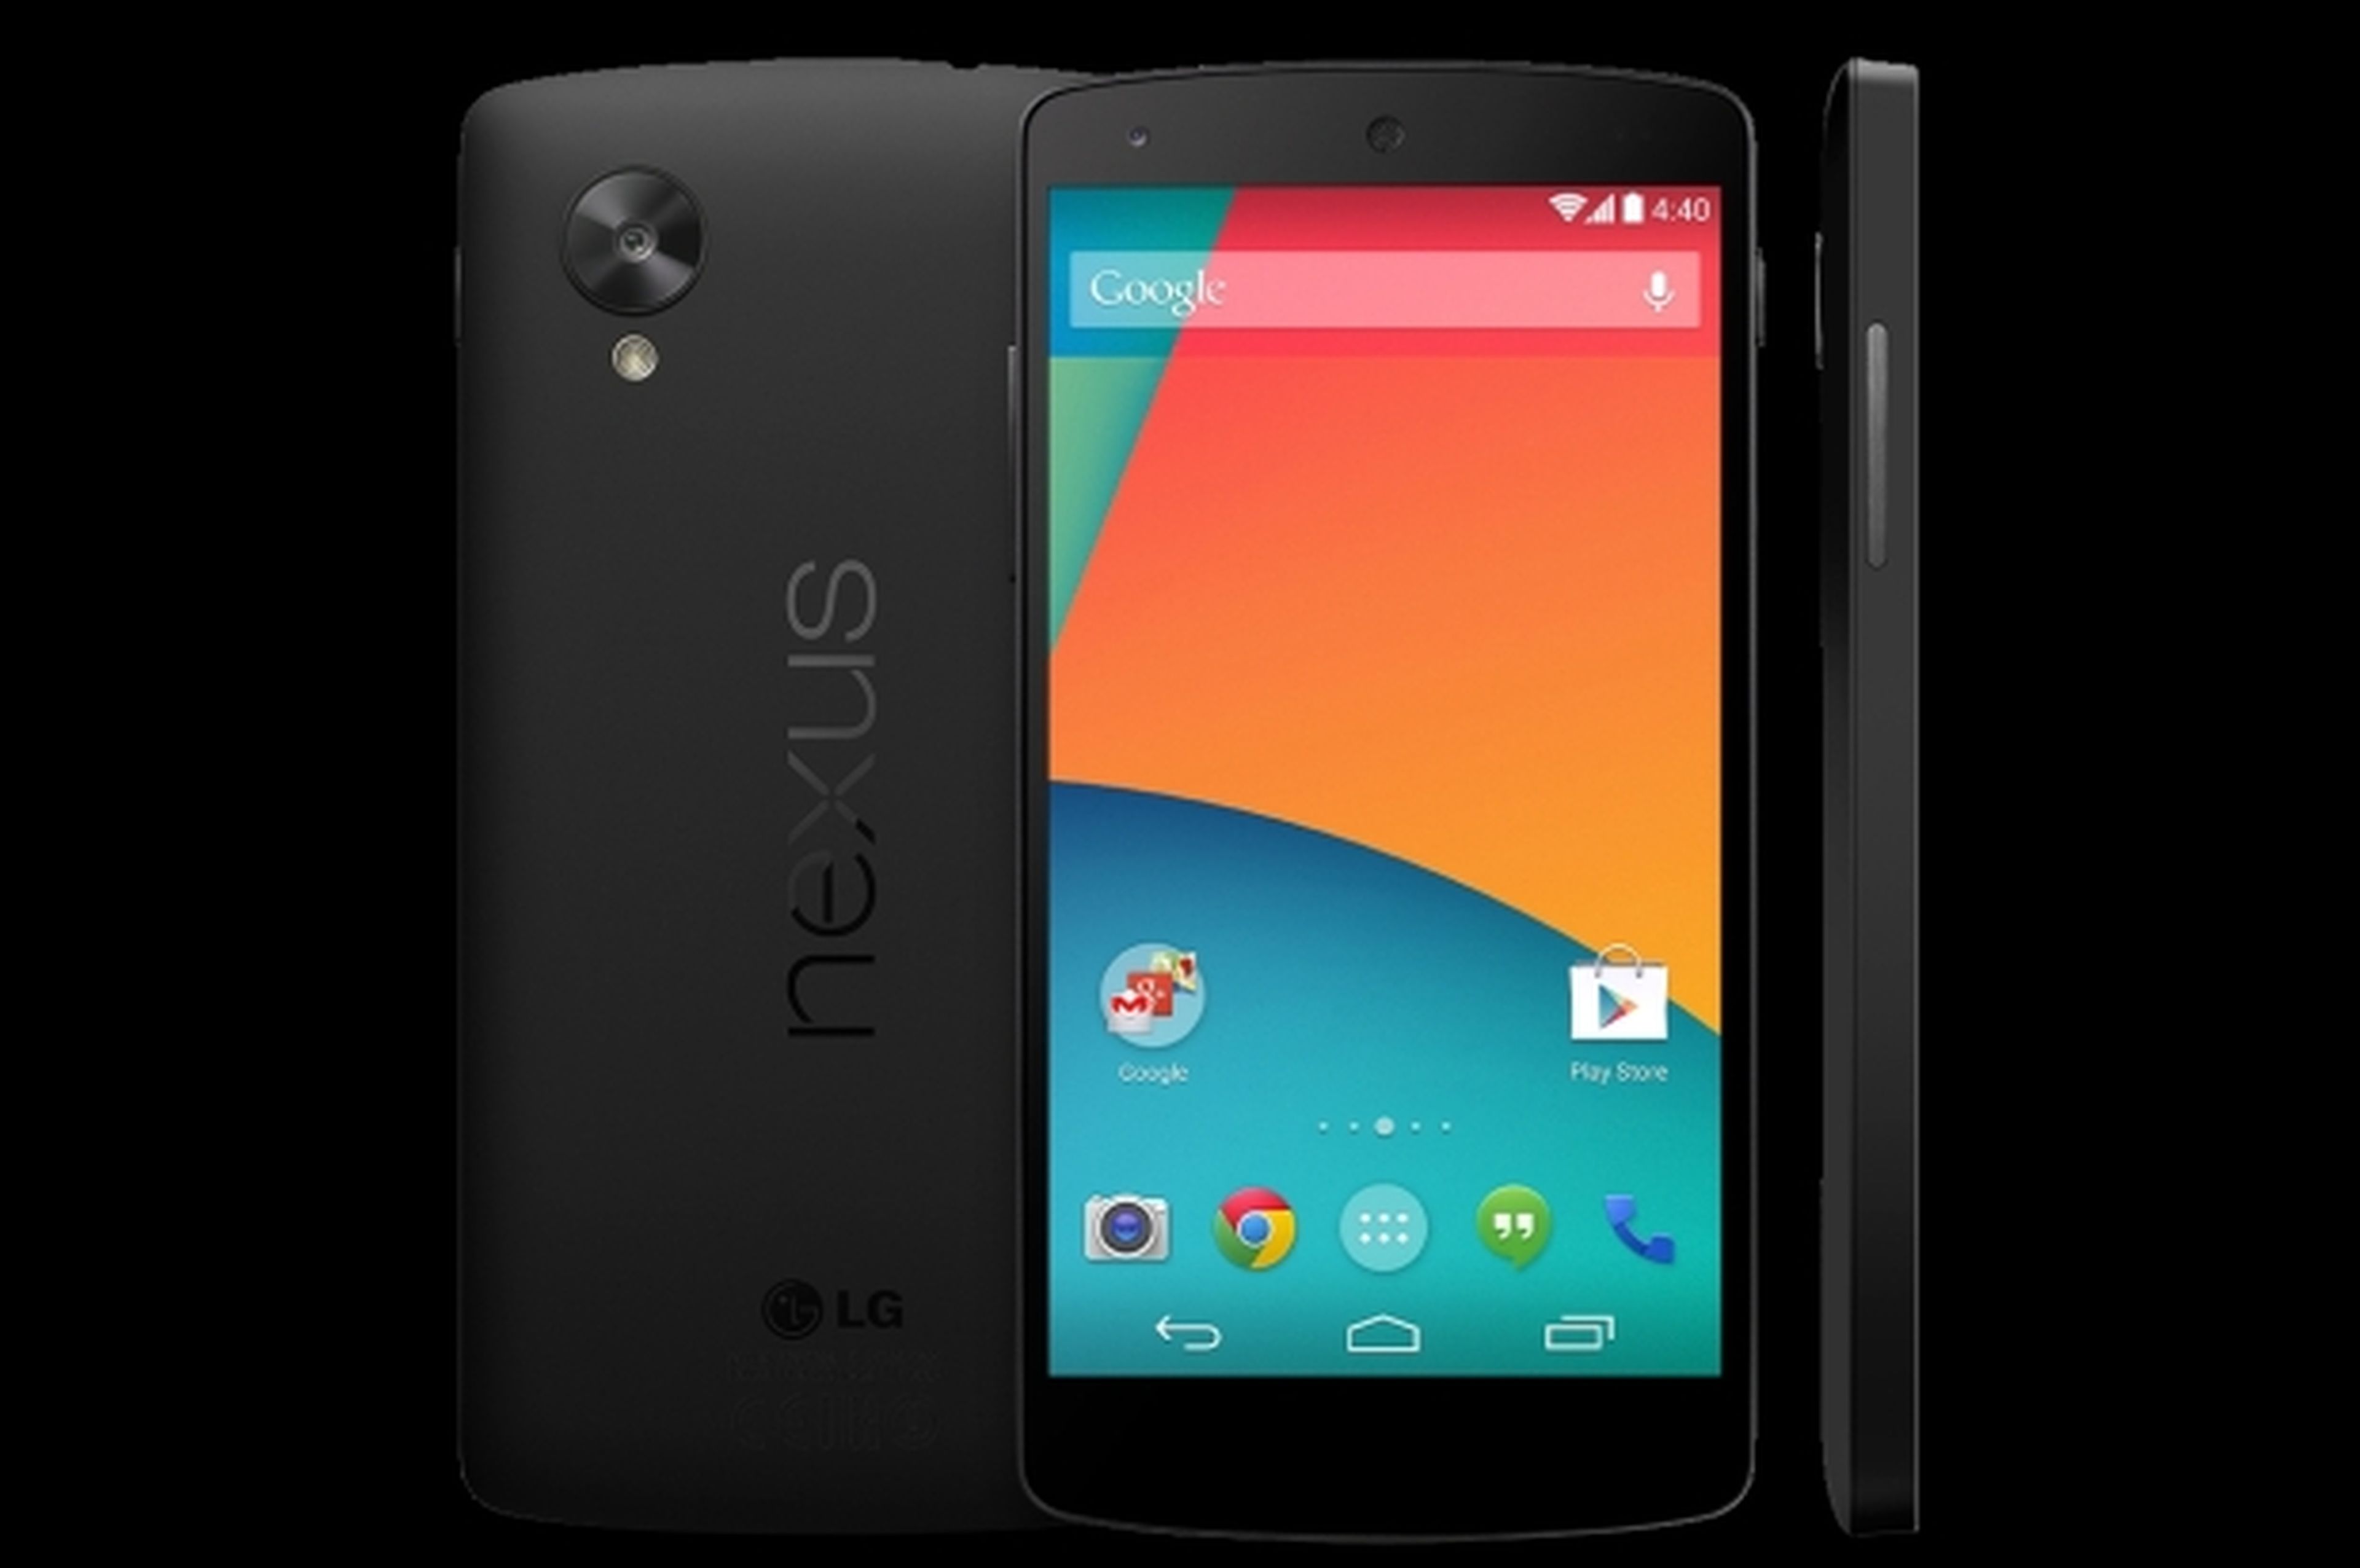 Nexus 5 aparece en Google Play, foto oficial y precio